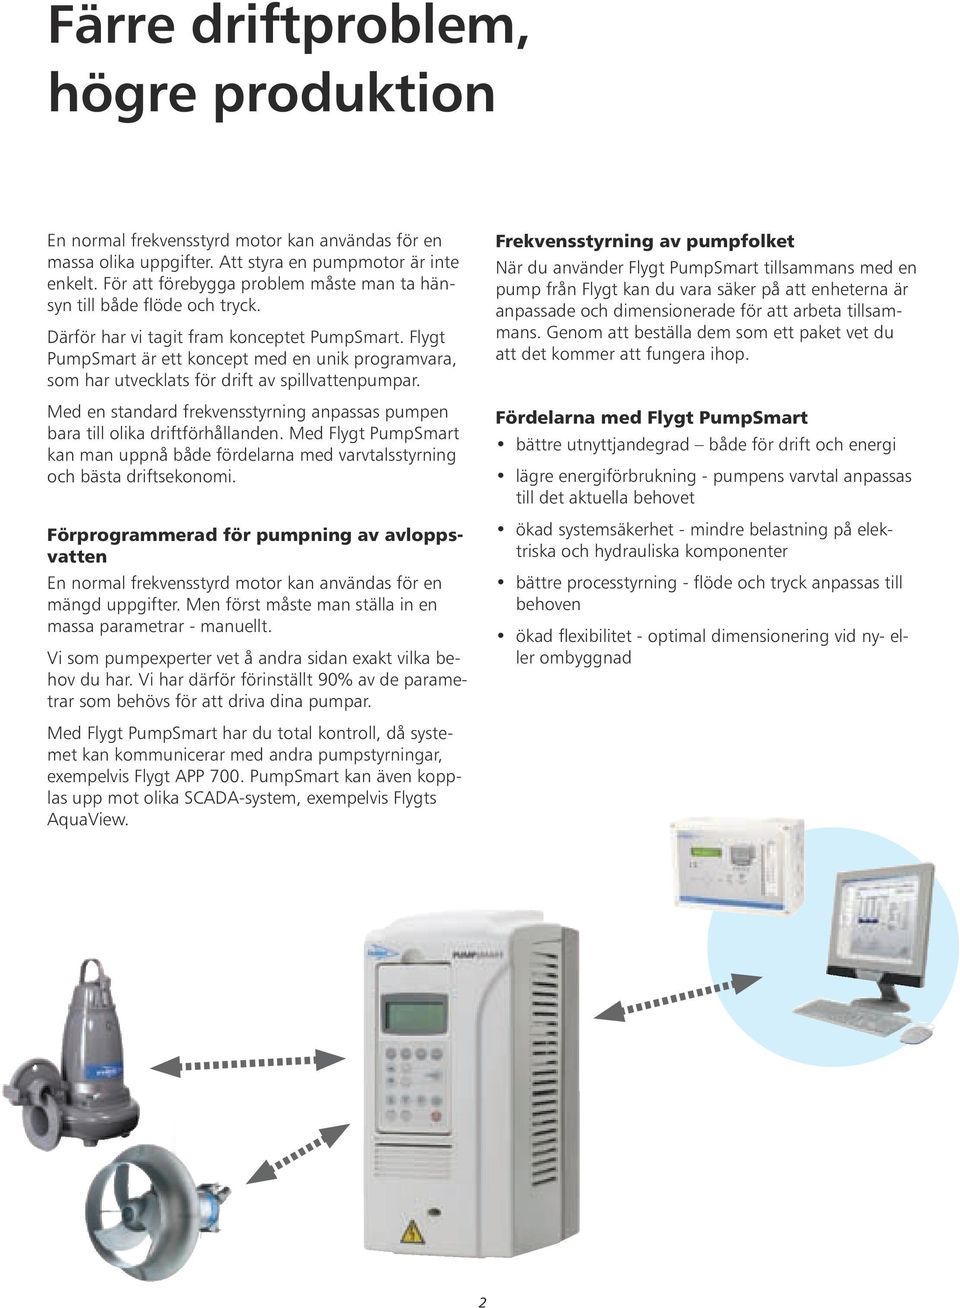 Flygt PumpSmart är ett koncept med en unik programvara, som har utvecklats för drift av spillvattenpumpar. Med en standard frekvensstyrning anpassas pumpen bara till olika driftförhållanden.